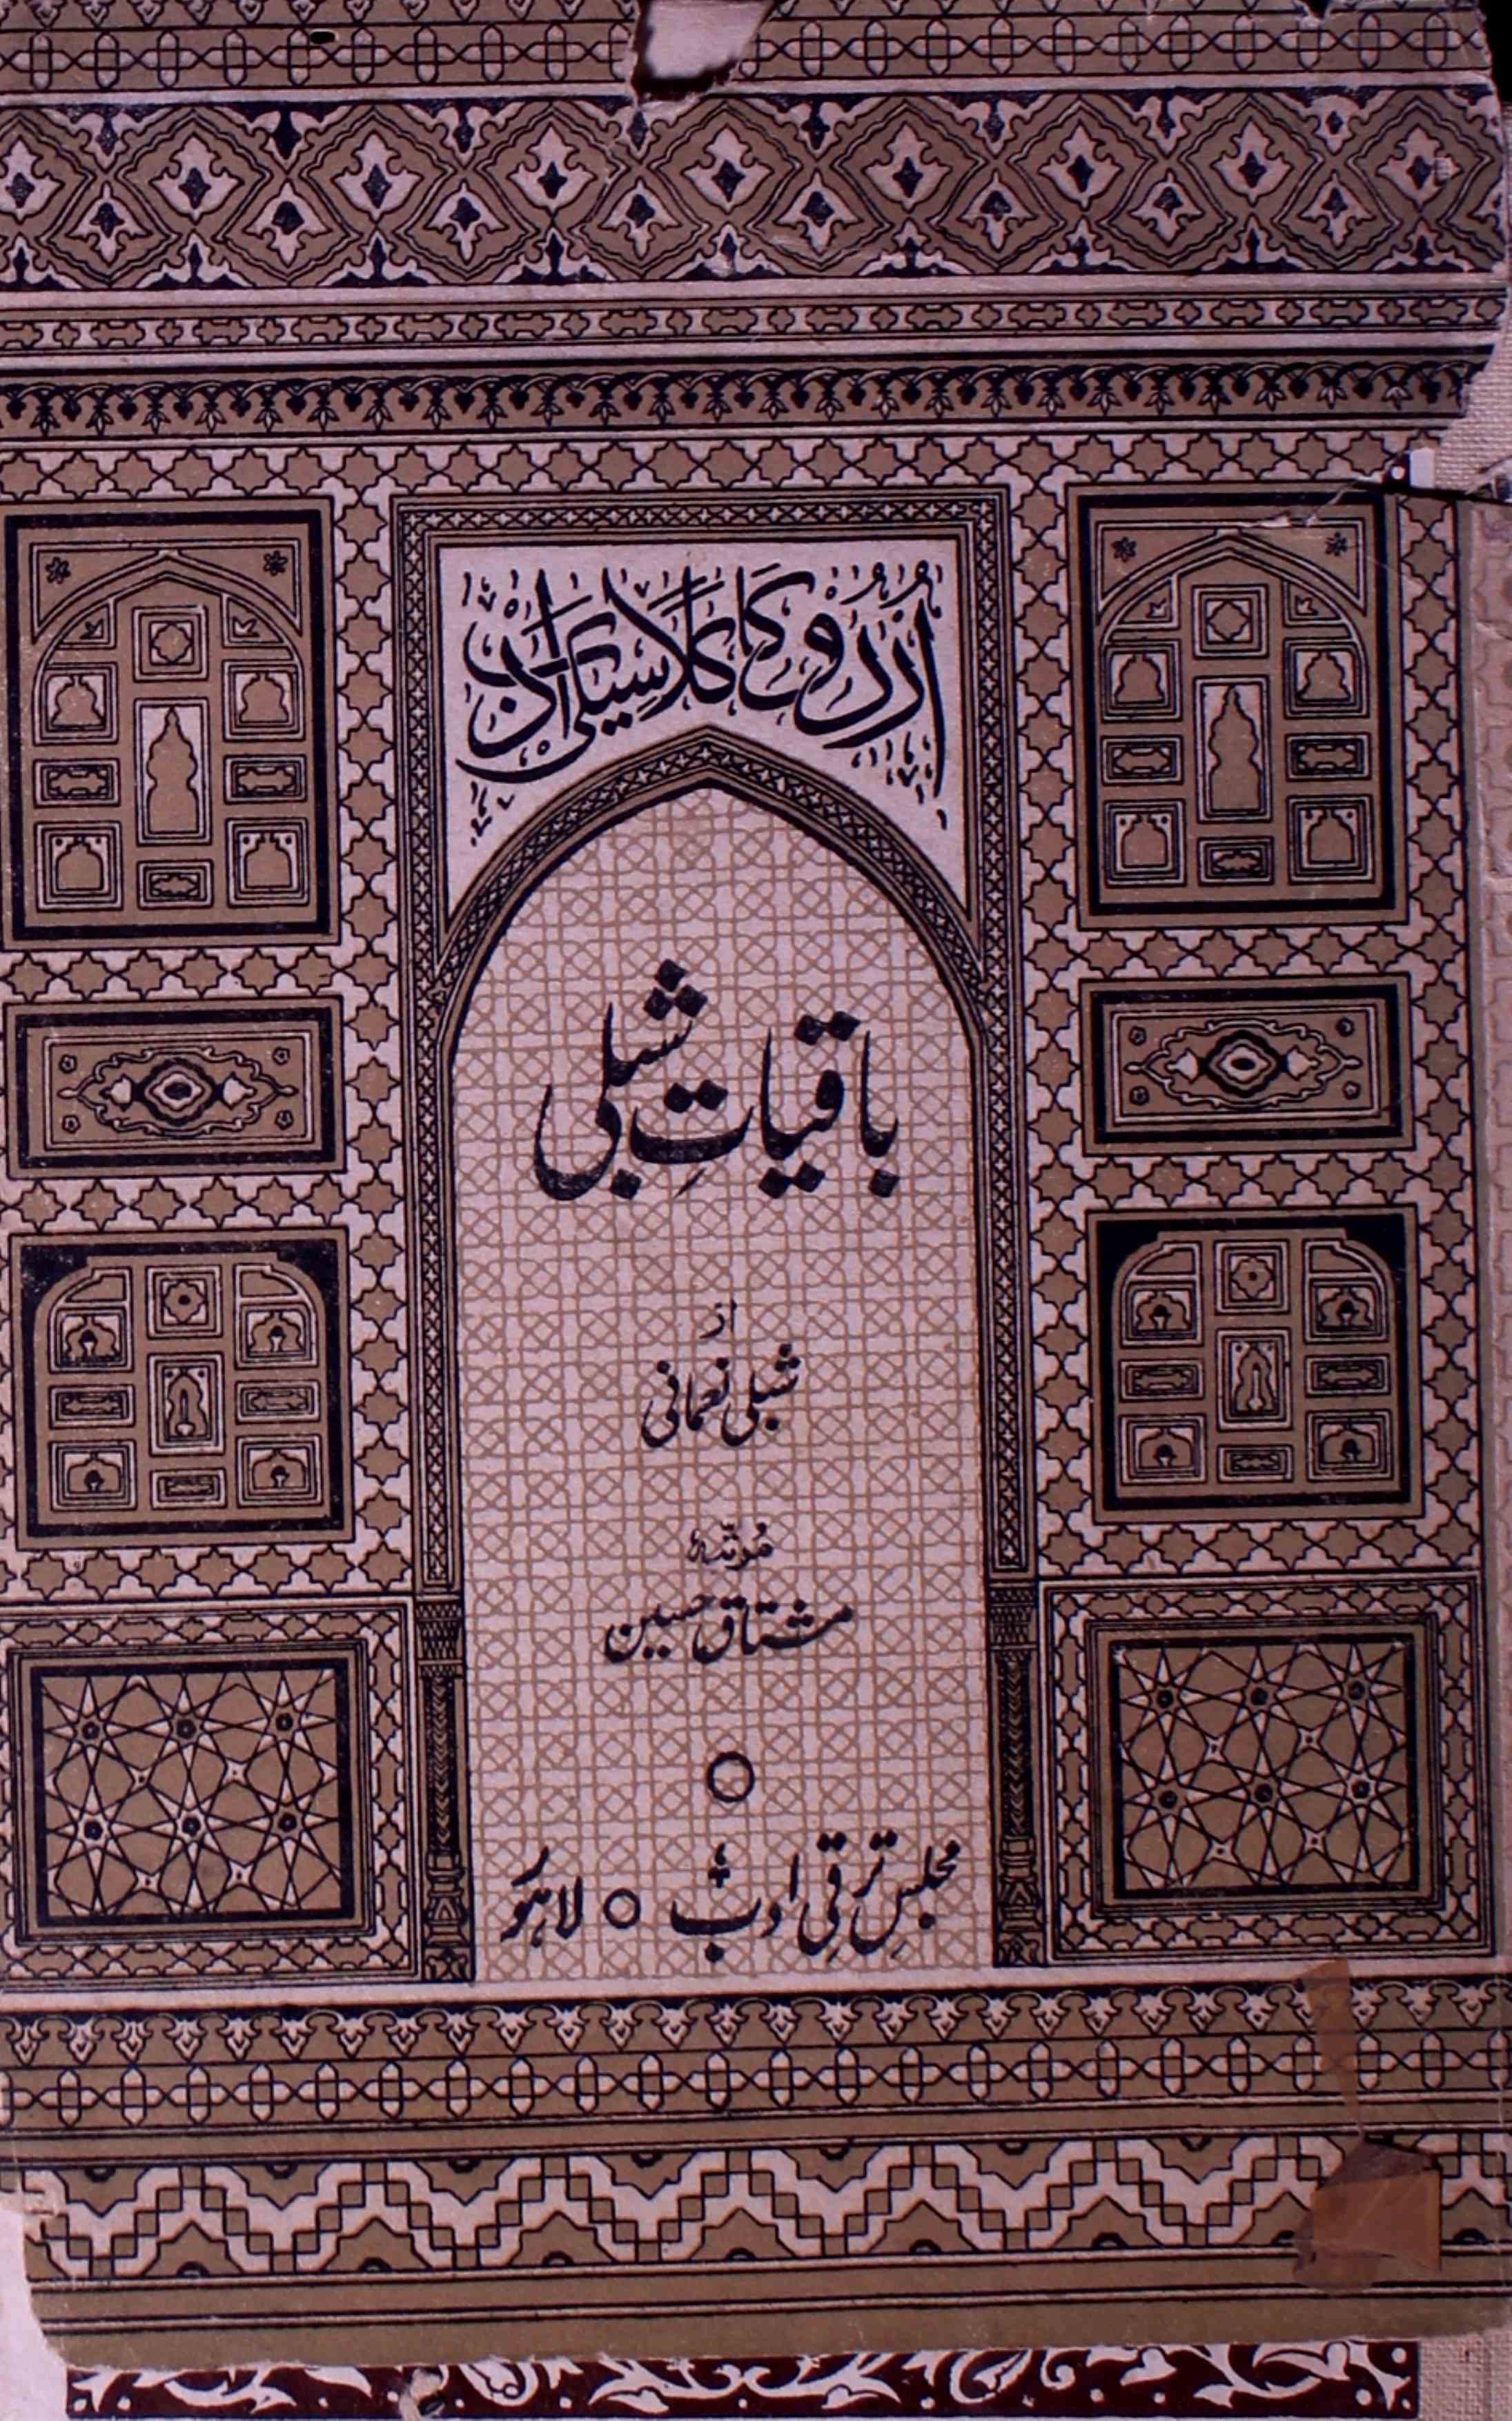 Baqiyat-e-Shibli